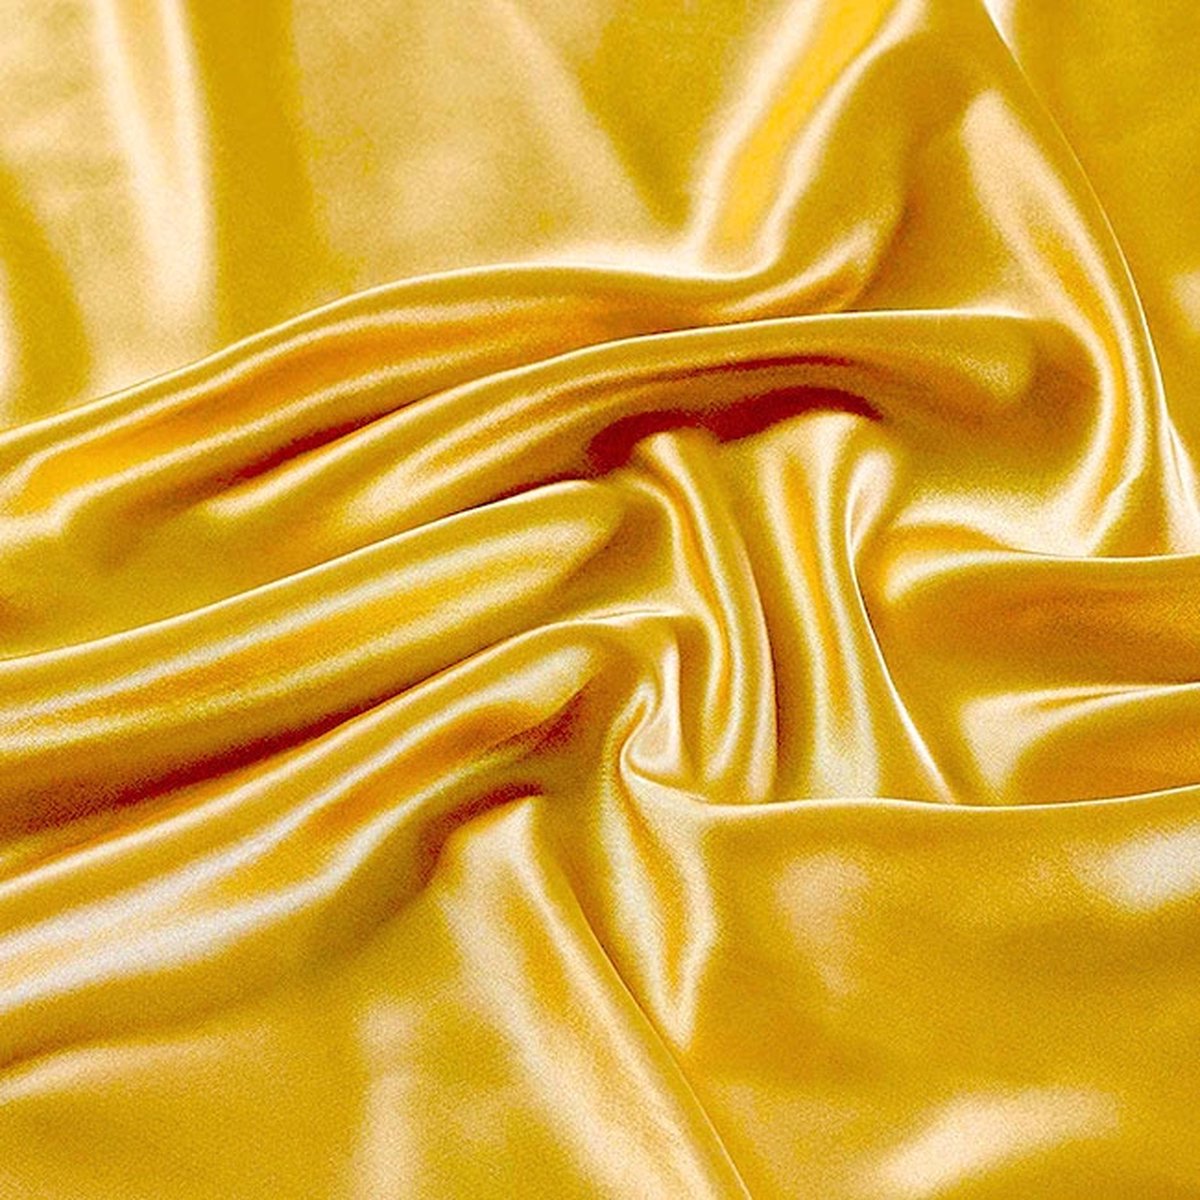 Beauty Silk Hoeslaken Satijn Geel 140 x 200 cm - Glans Satijn